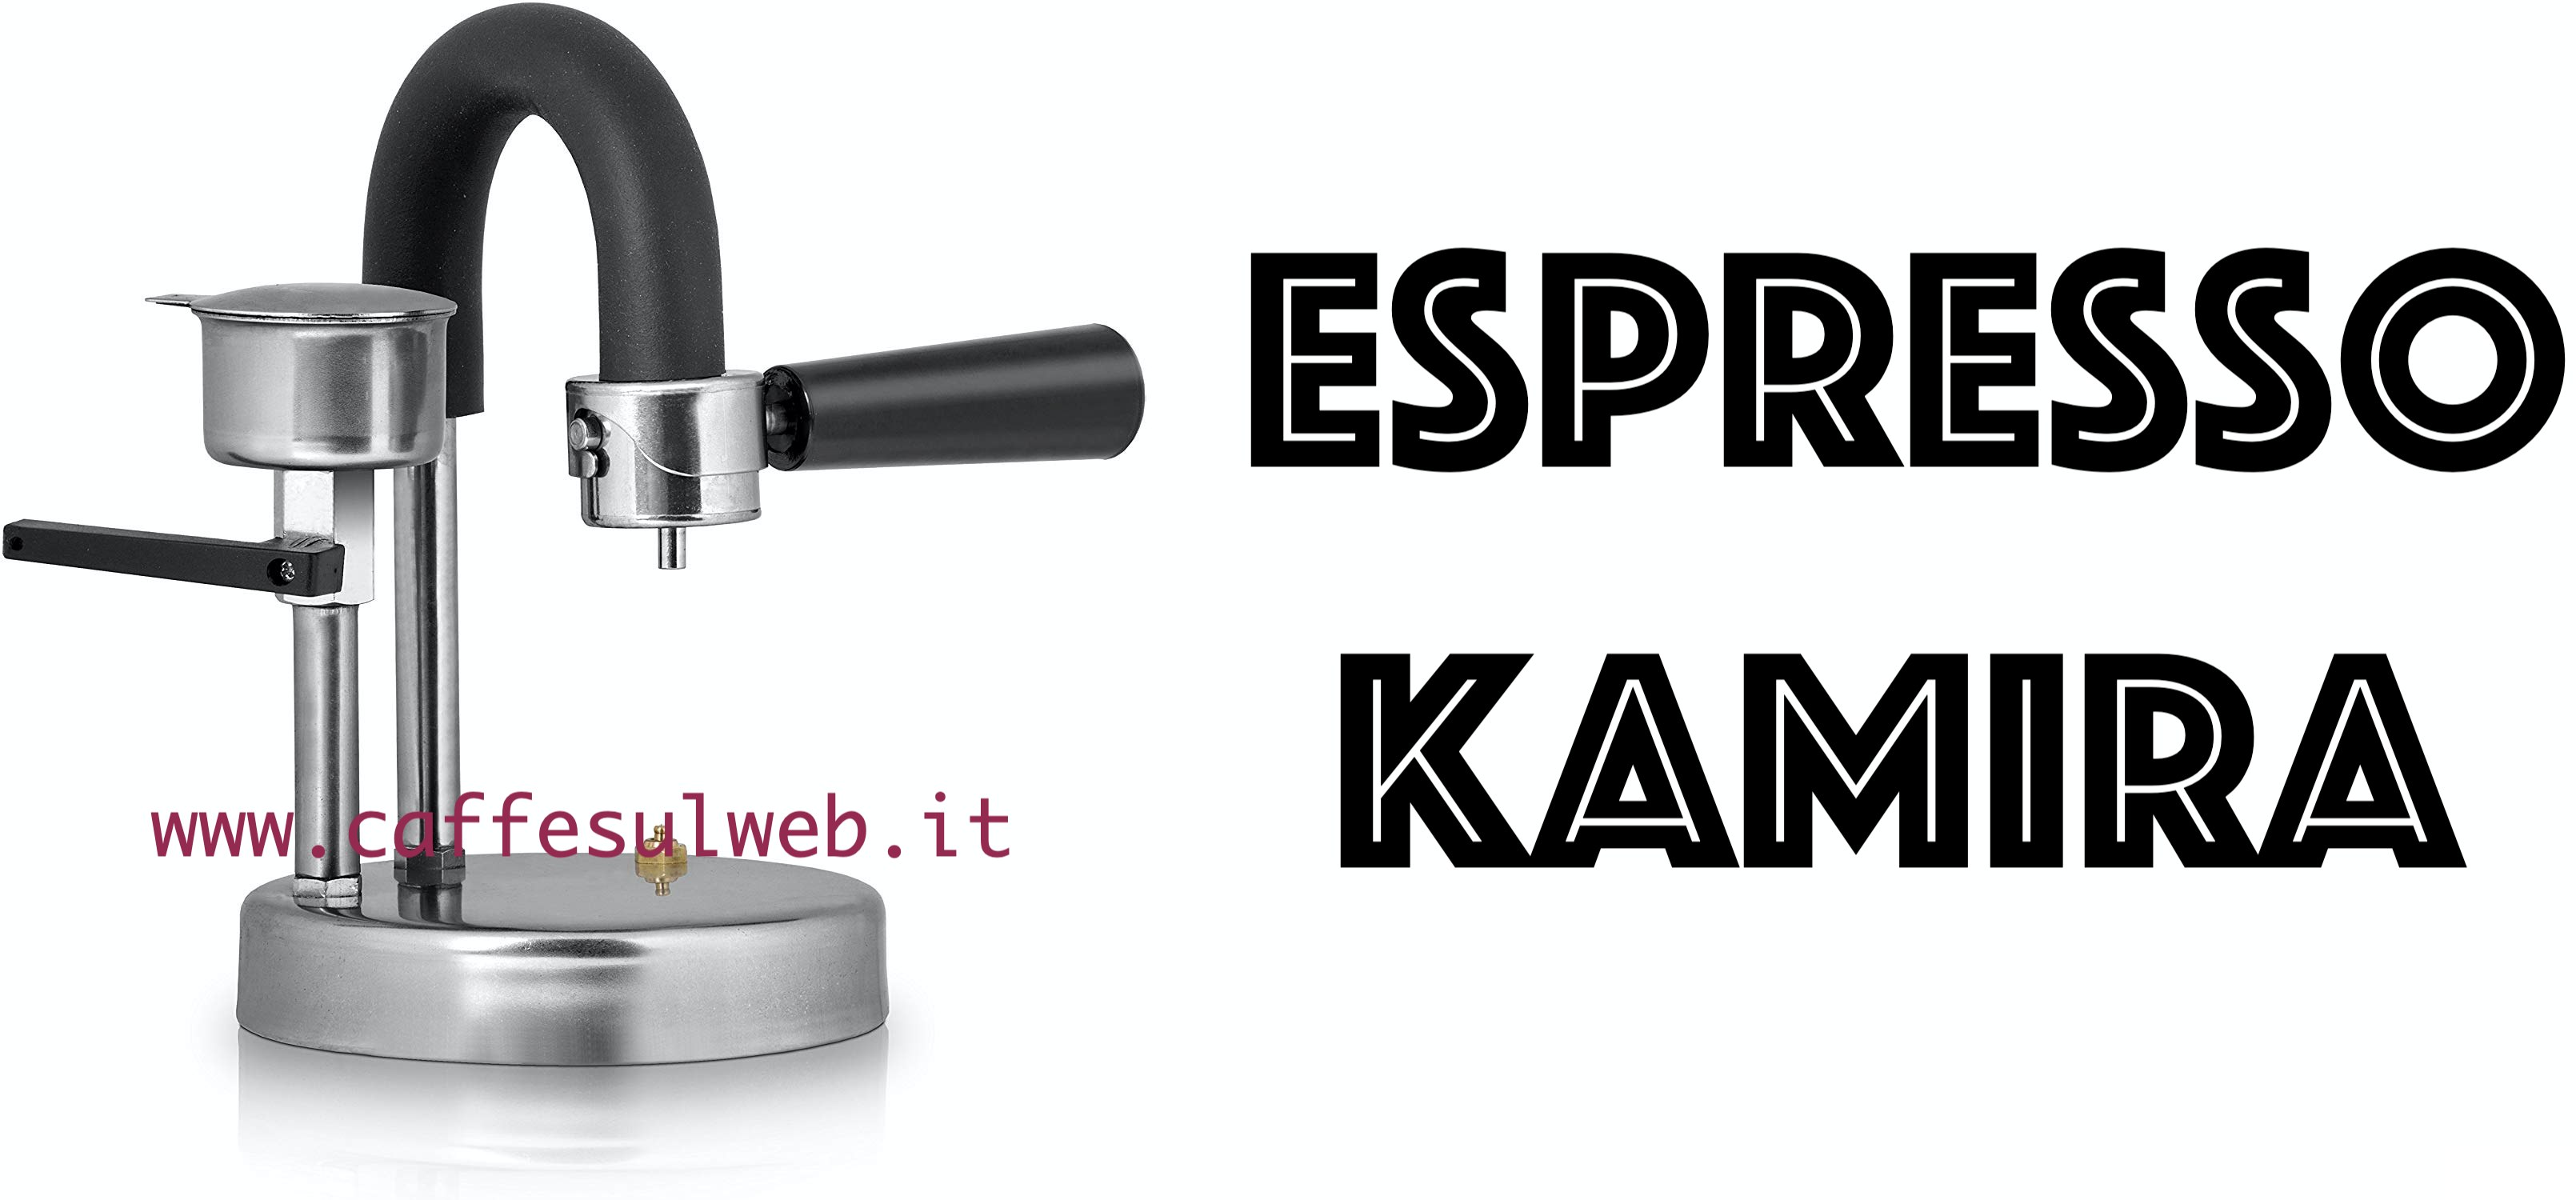 Espresso Kamira Caffettiera Recensioni Opinione Prezzo